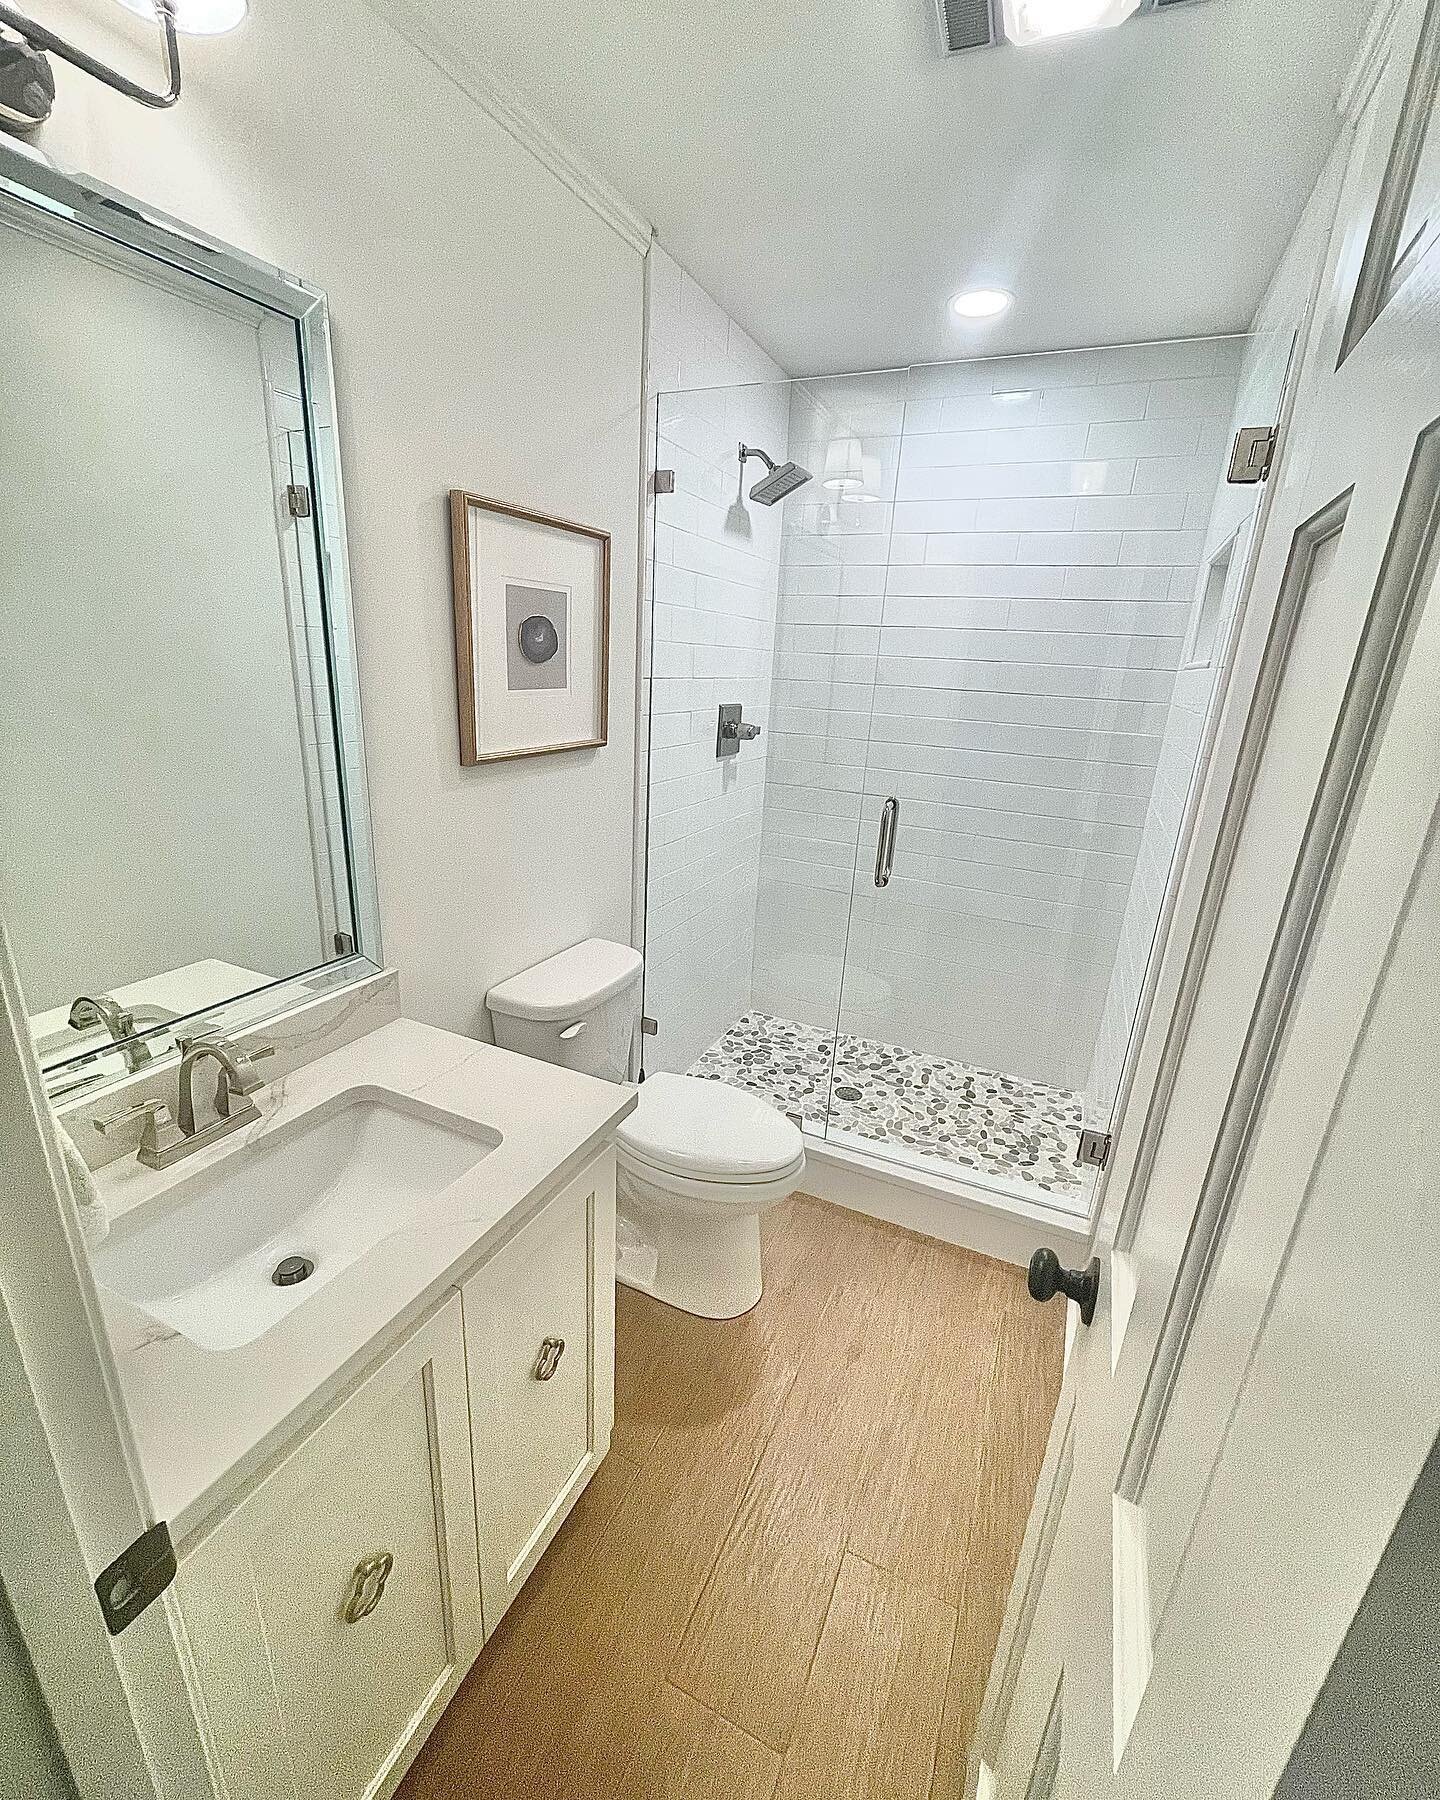 Guests deserve a nice bathroom too!😁
&bull;
#beforeandafter 
&bull;
#maxwellrenovations #maxwellrenovationsproject #bathroomdesign #bathroom #bathroomremodel #bathroomdecor #bathroomrenovation #shower #showerthoughts #quartzite #shreveportremodeler 